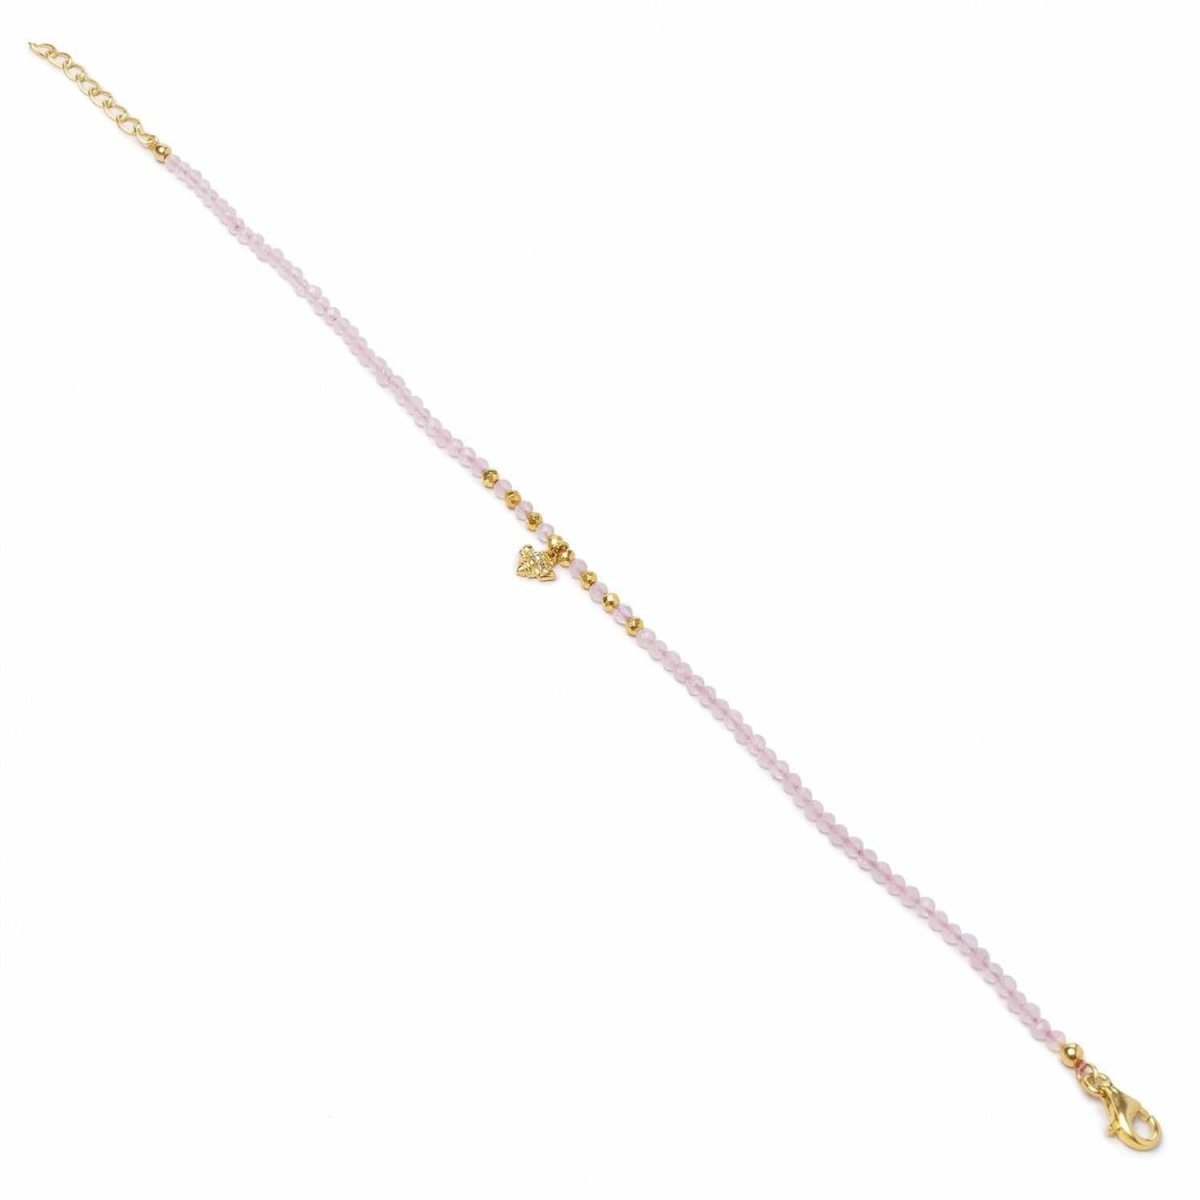 Bracelet - Thin silver bracelets bee design in pink